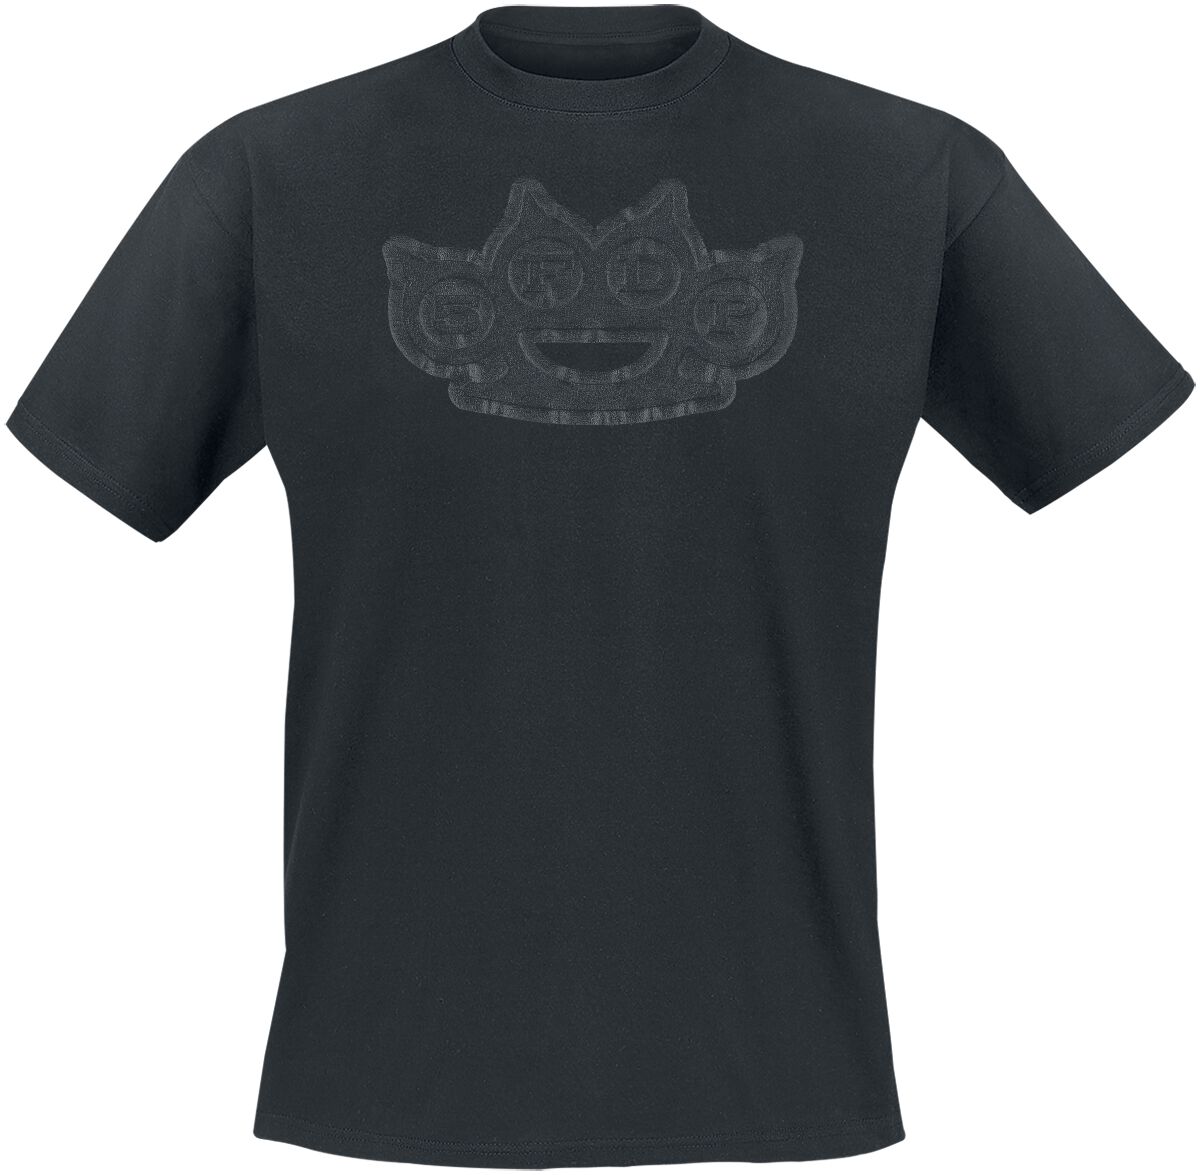 Five Finger Death Punch T-Shirt - Black On Black Knuckles - S bis 4XL - für Männer - Größe L - schwarz  - Lizenziertes Merchandise!